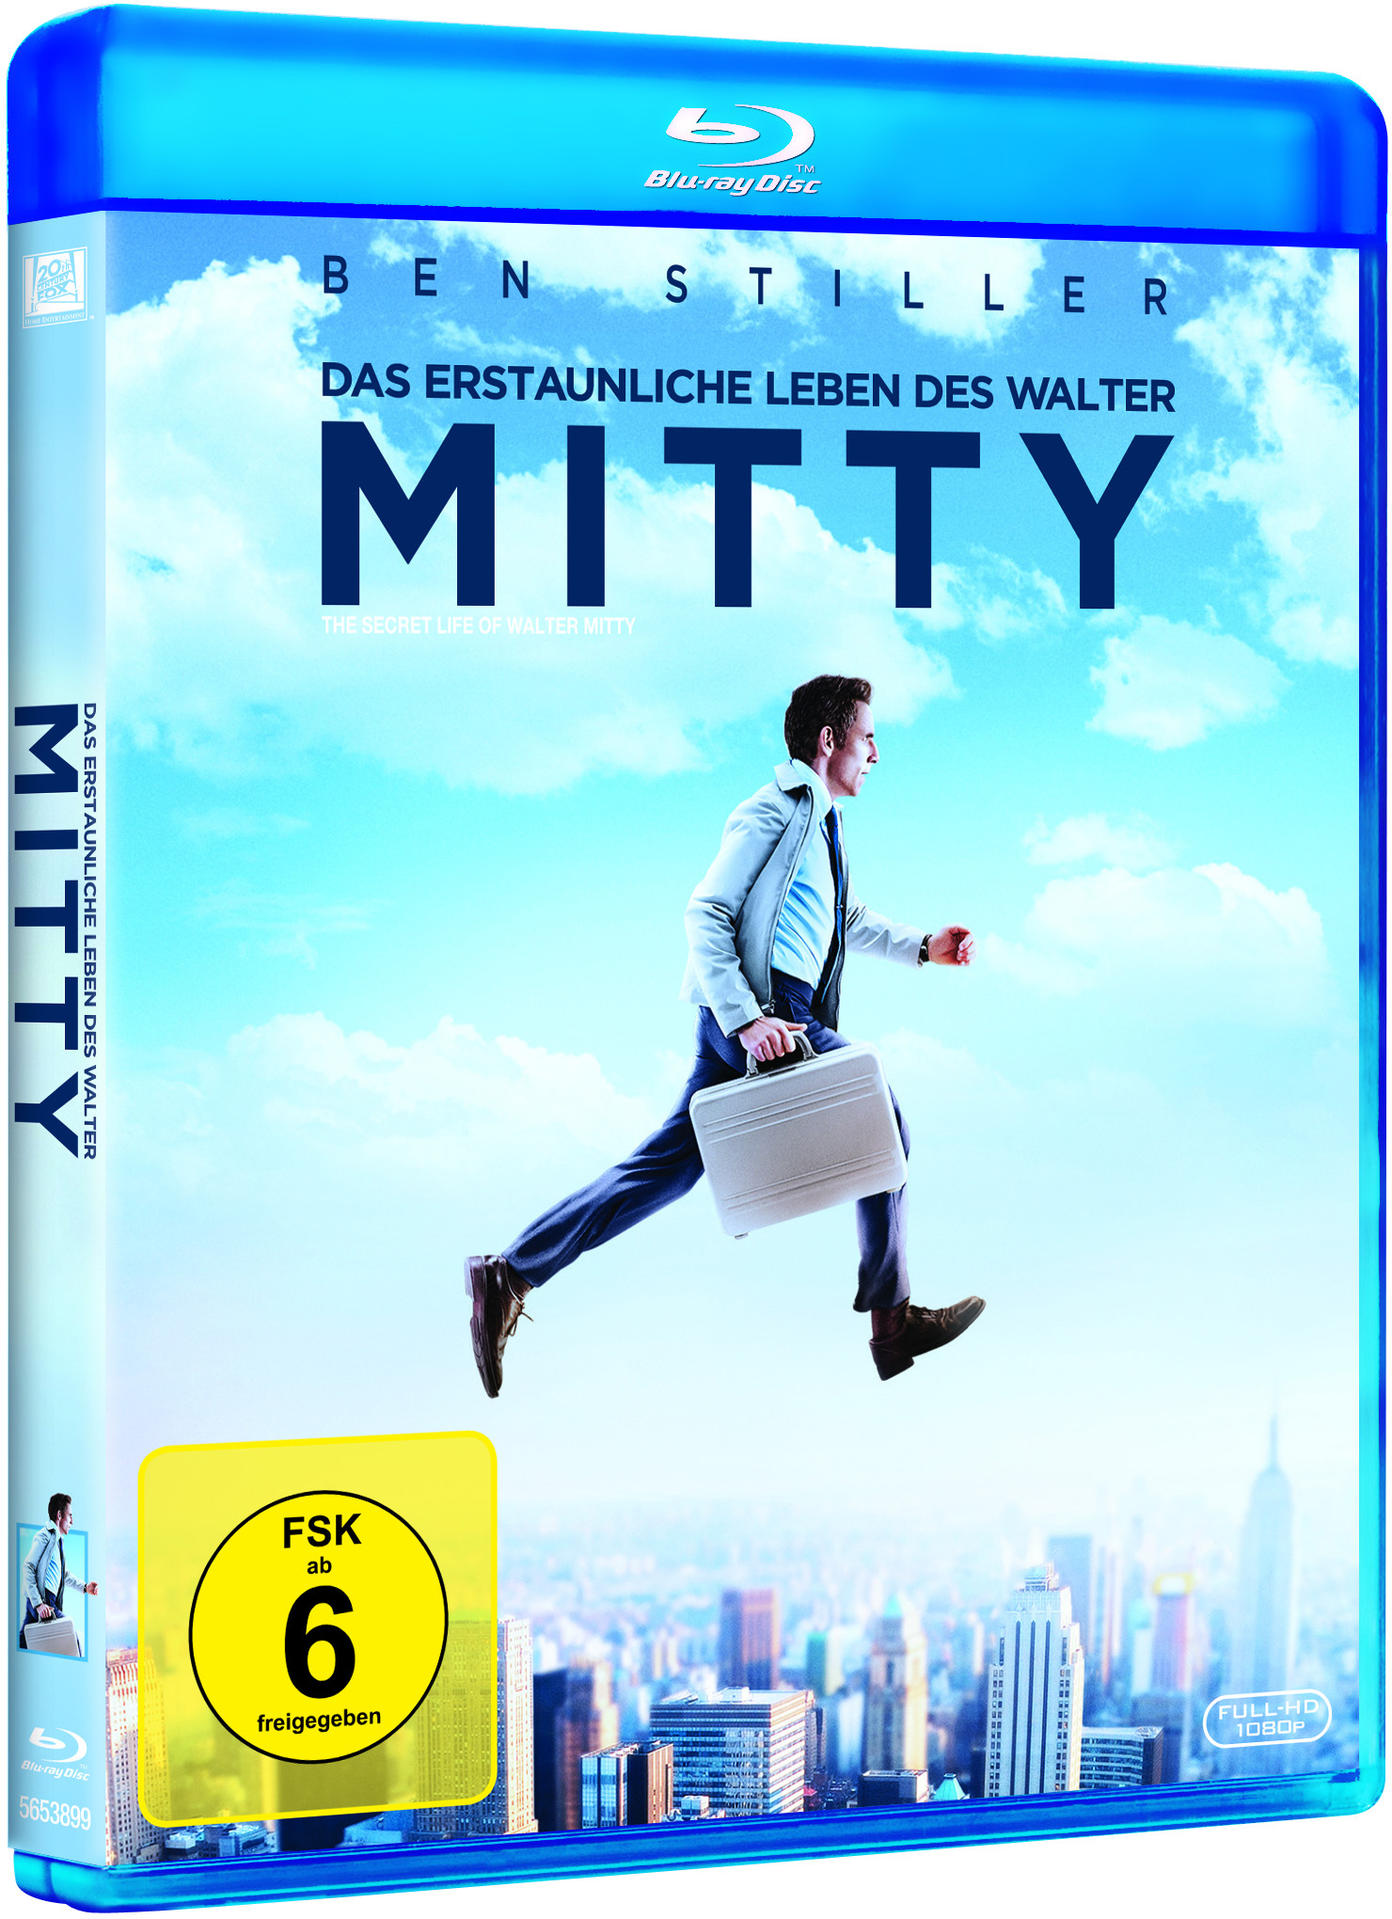 Leben Mitty erstaunliche des Walter Das Blu-ray